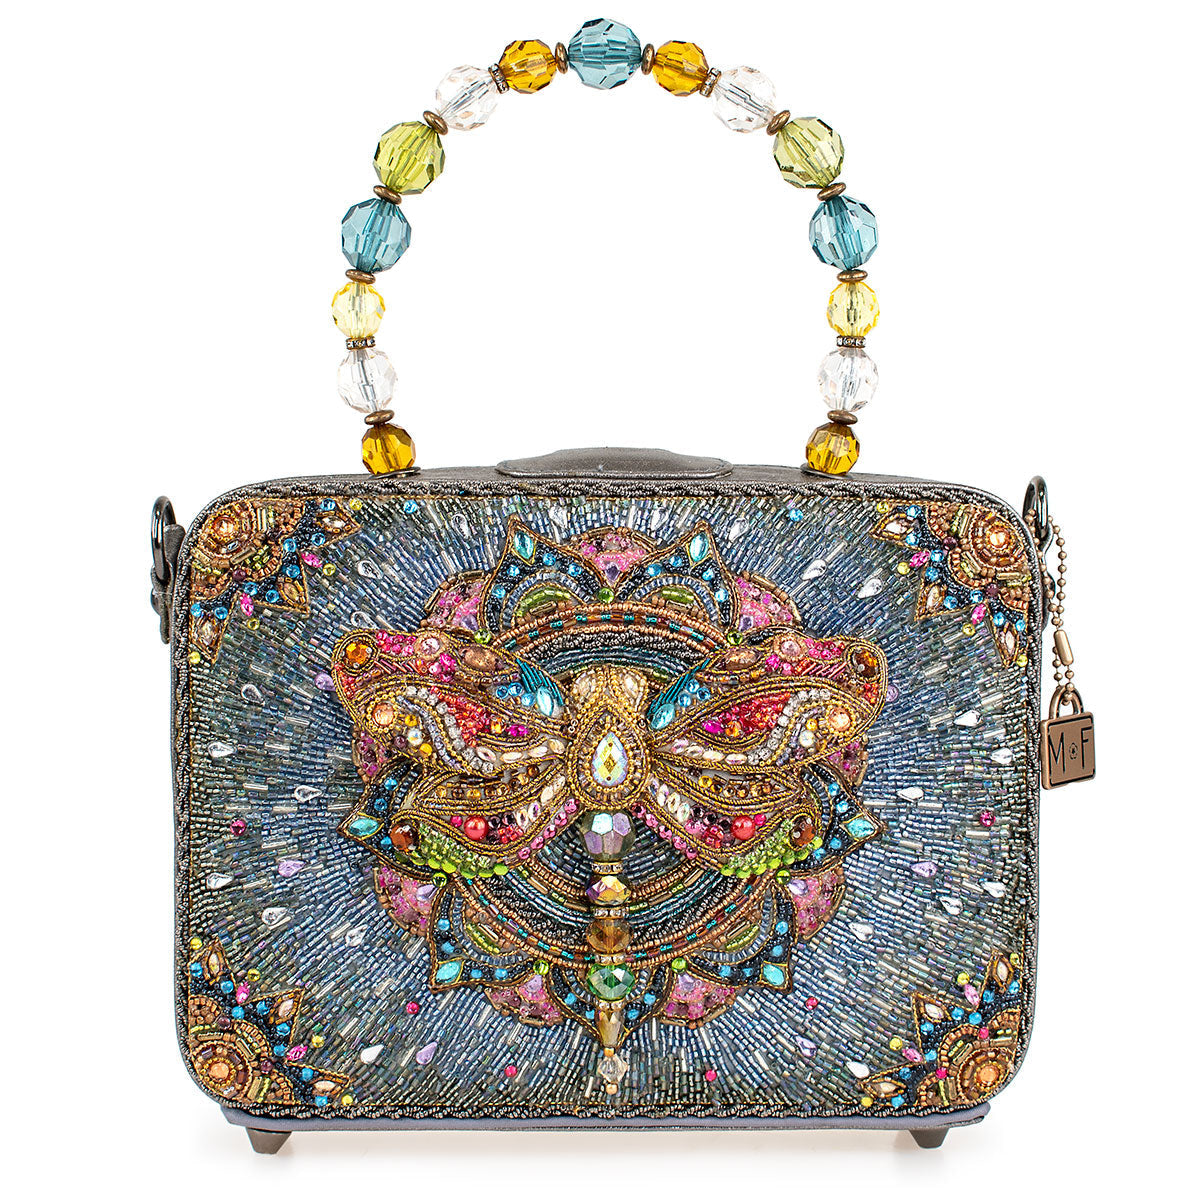 mary frances purse new - Women's handbags